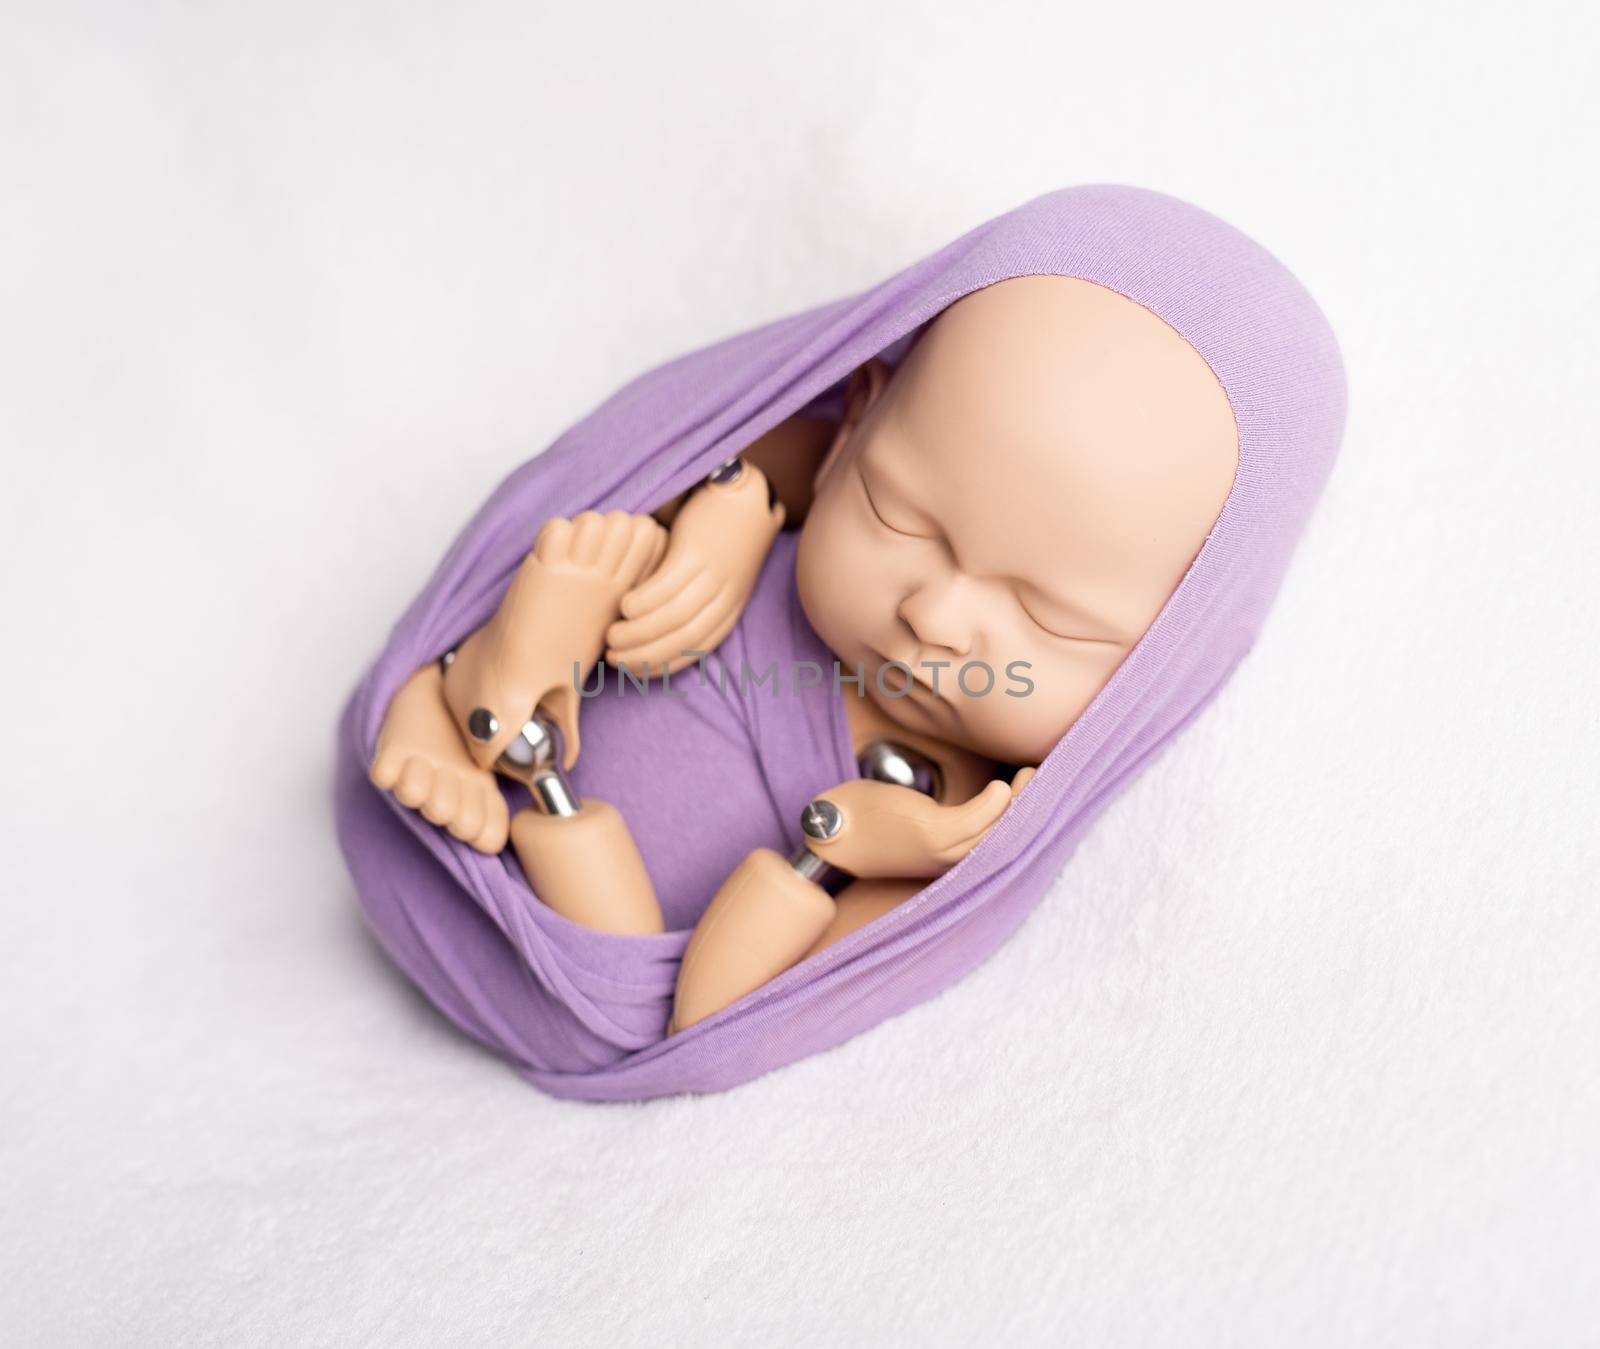 Doll of newborn kid in sling by tan4ikk1